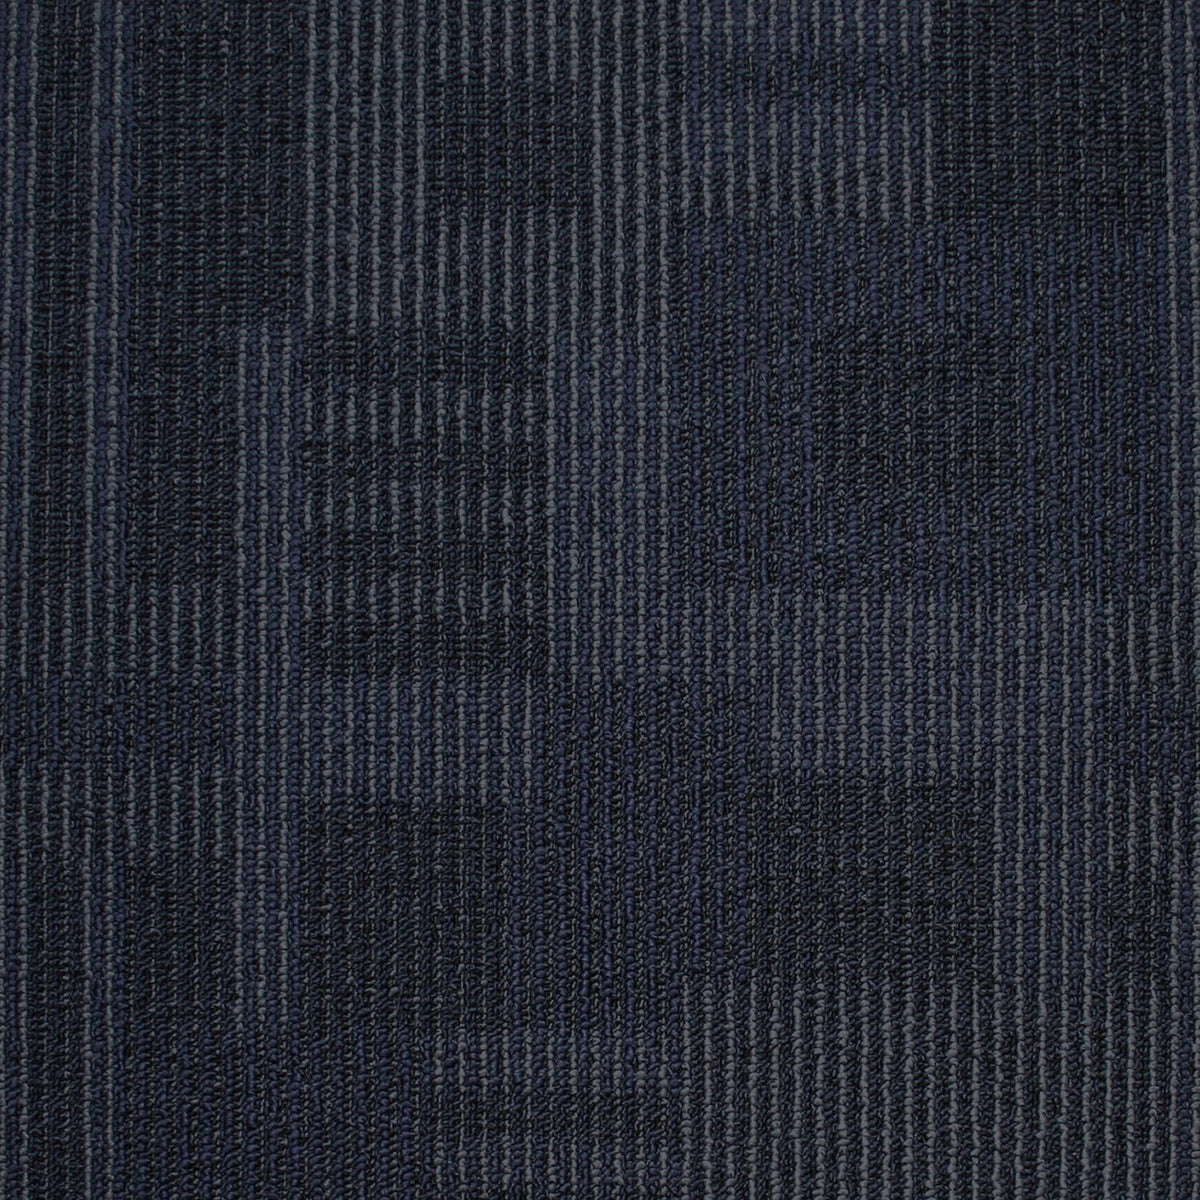 Kraus - Dimensions - Carpet Tile - Blueprint